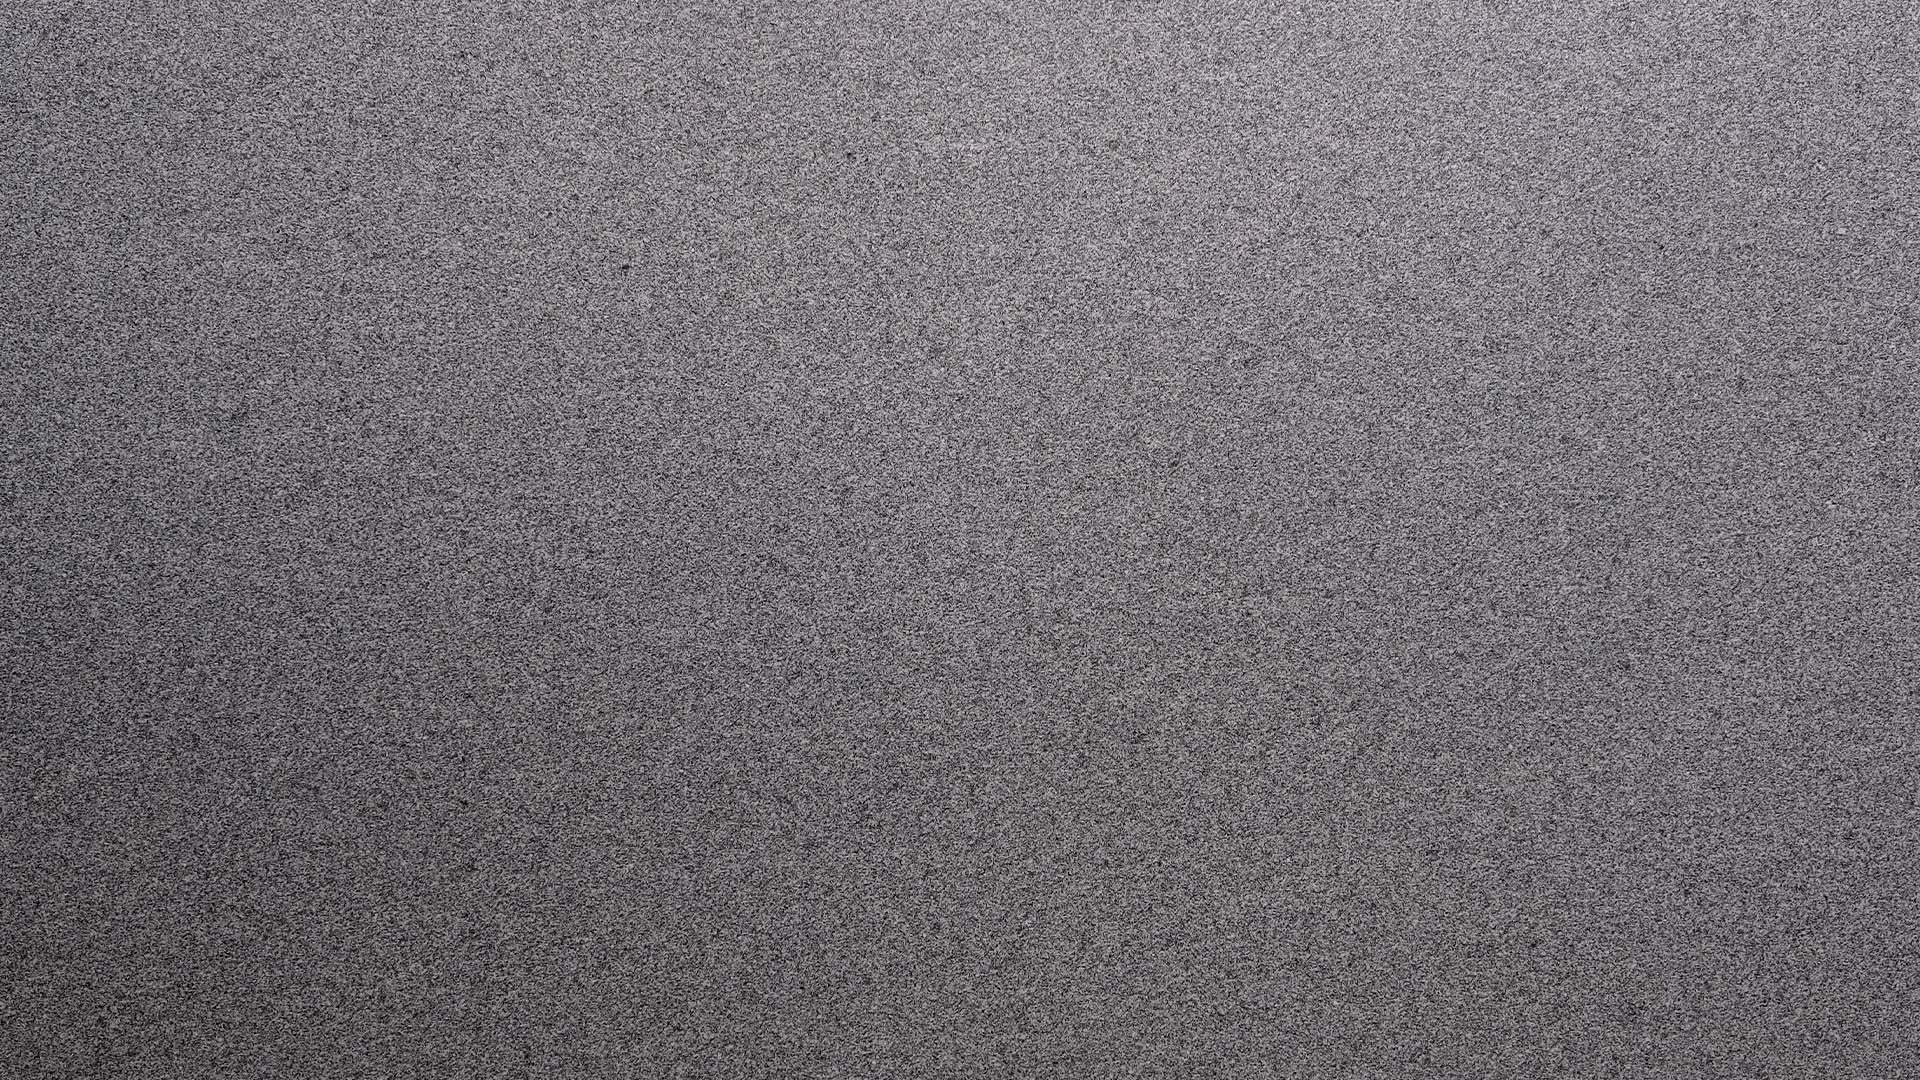 Naturstein Küchenarbeitsplatte mit weiß-hellgrauer Grundfarbe im matten leather look mit allgemein feiner Struktur und feinen, schwarz-grauen Sprenklern in der Farbe Plöckinger.